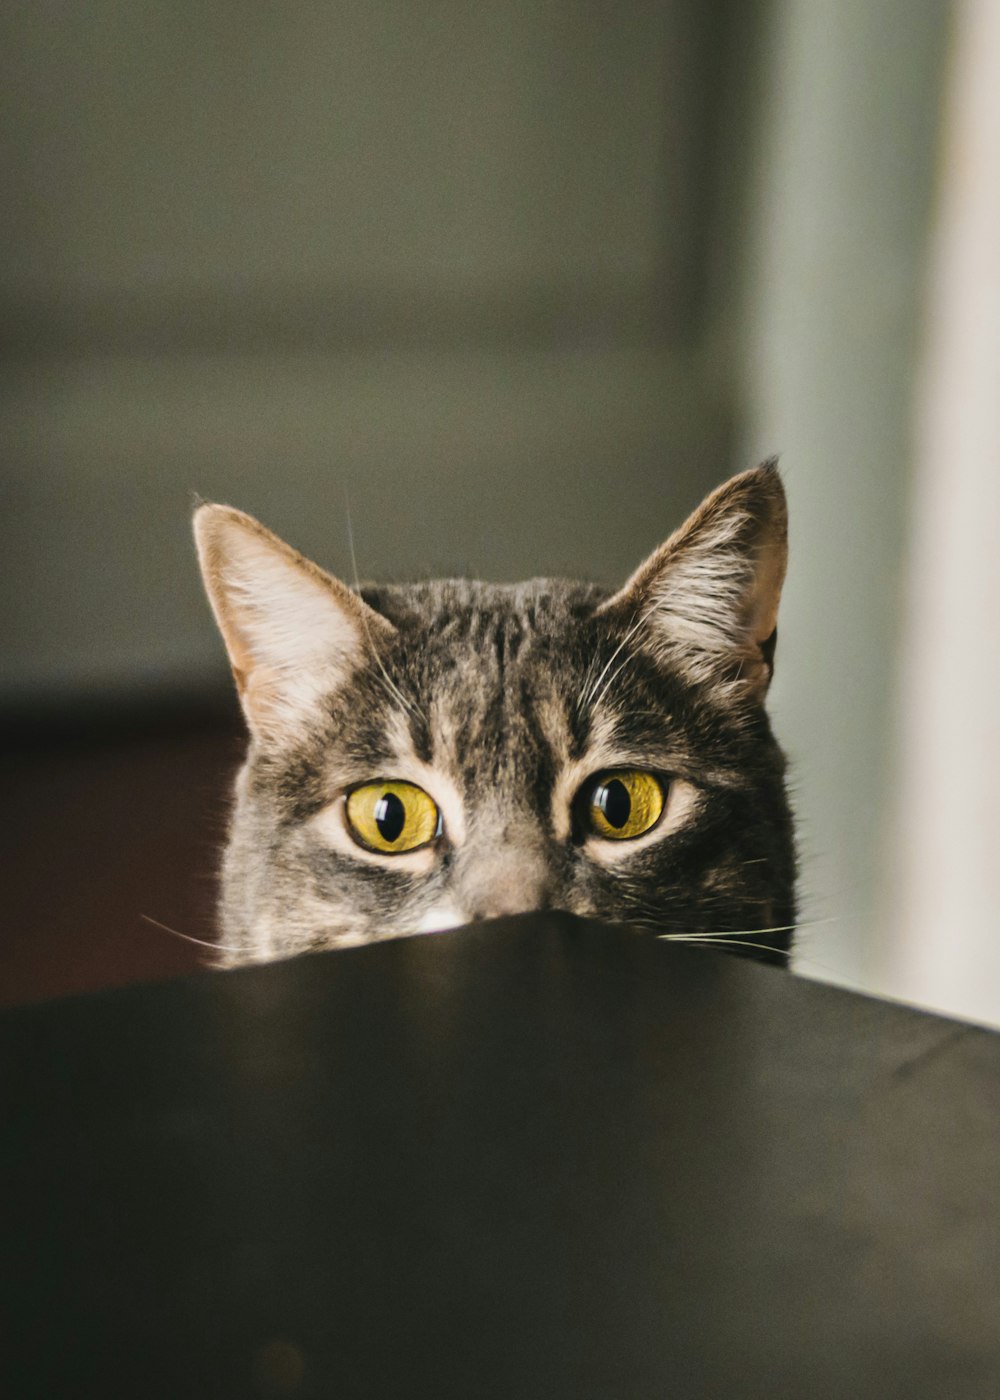 テーブルを覗く灰色の猫のセレクティブフォーカス撮影